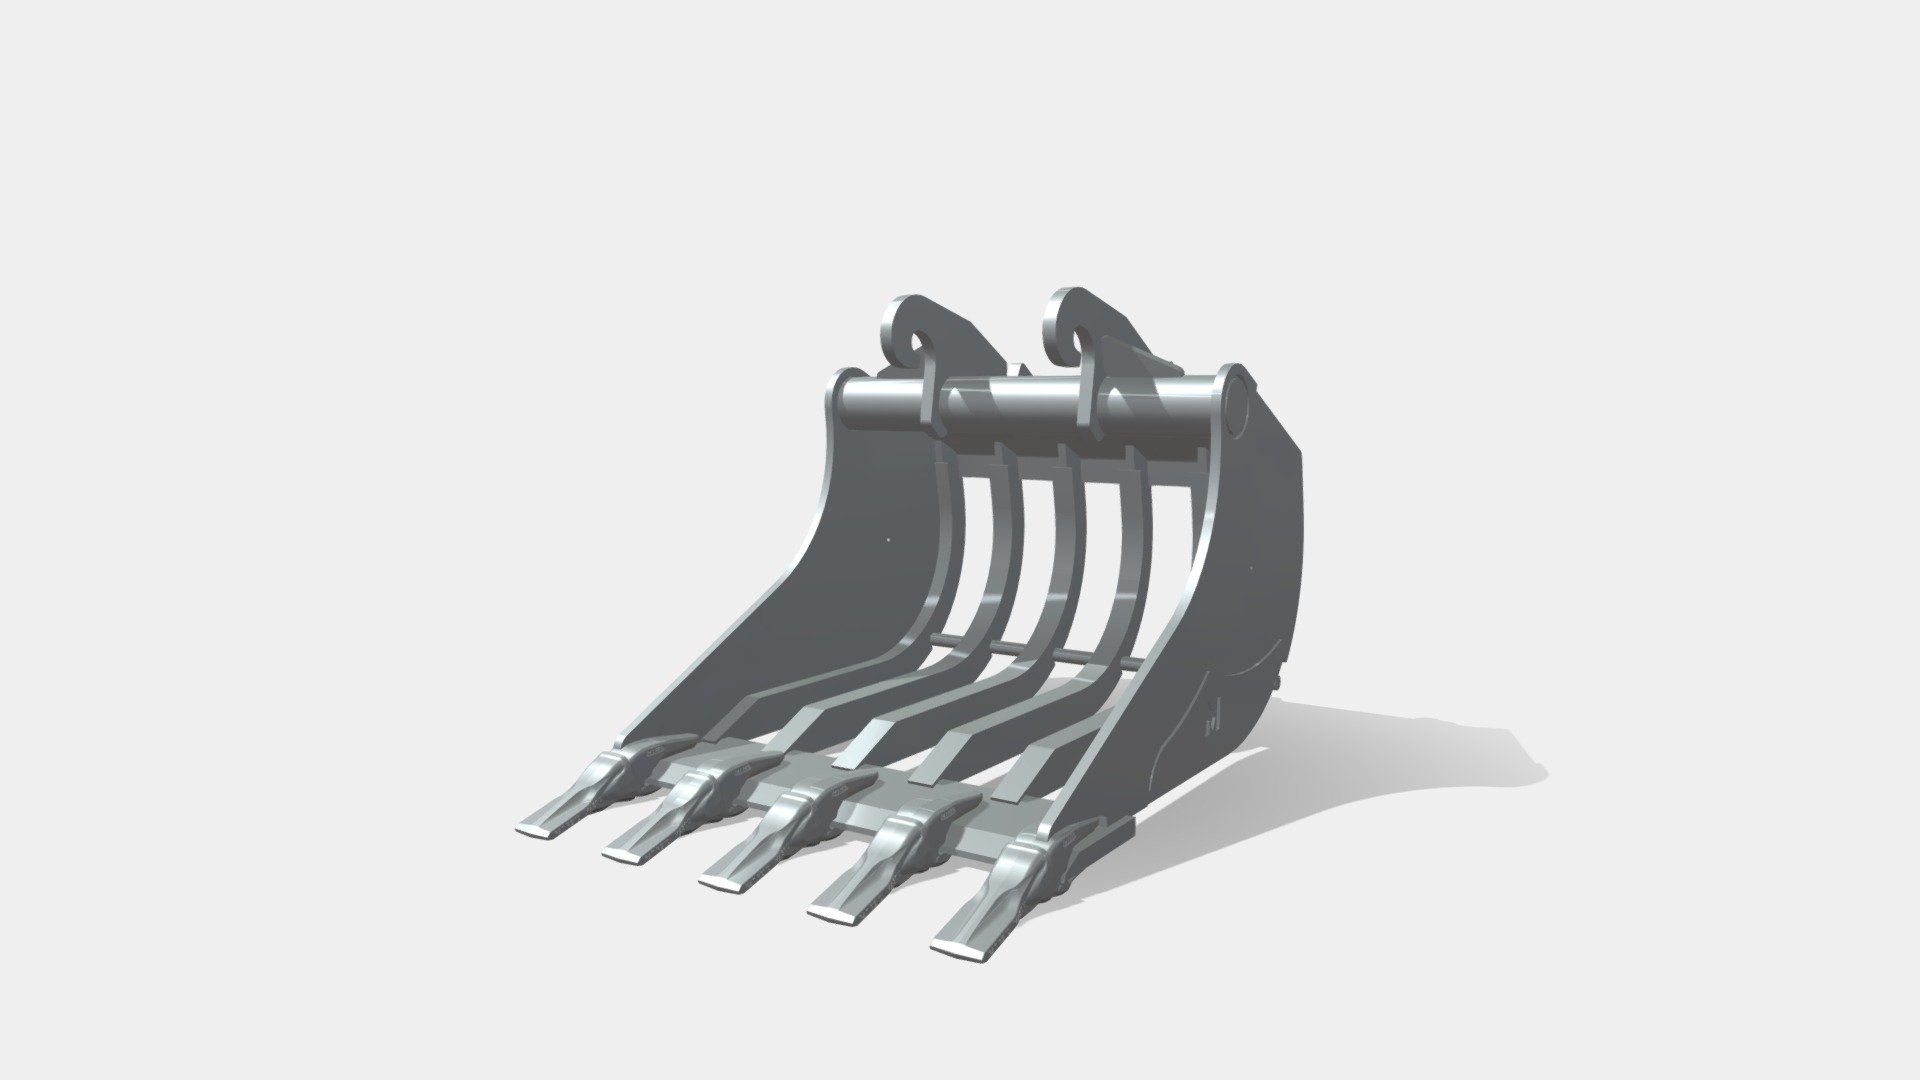 Pour excavatrices 9,2 - 22,5 T - Godet de terrassement squelette profil tilt - 3D model by MAGSI 3d model